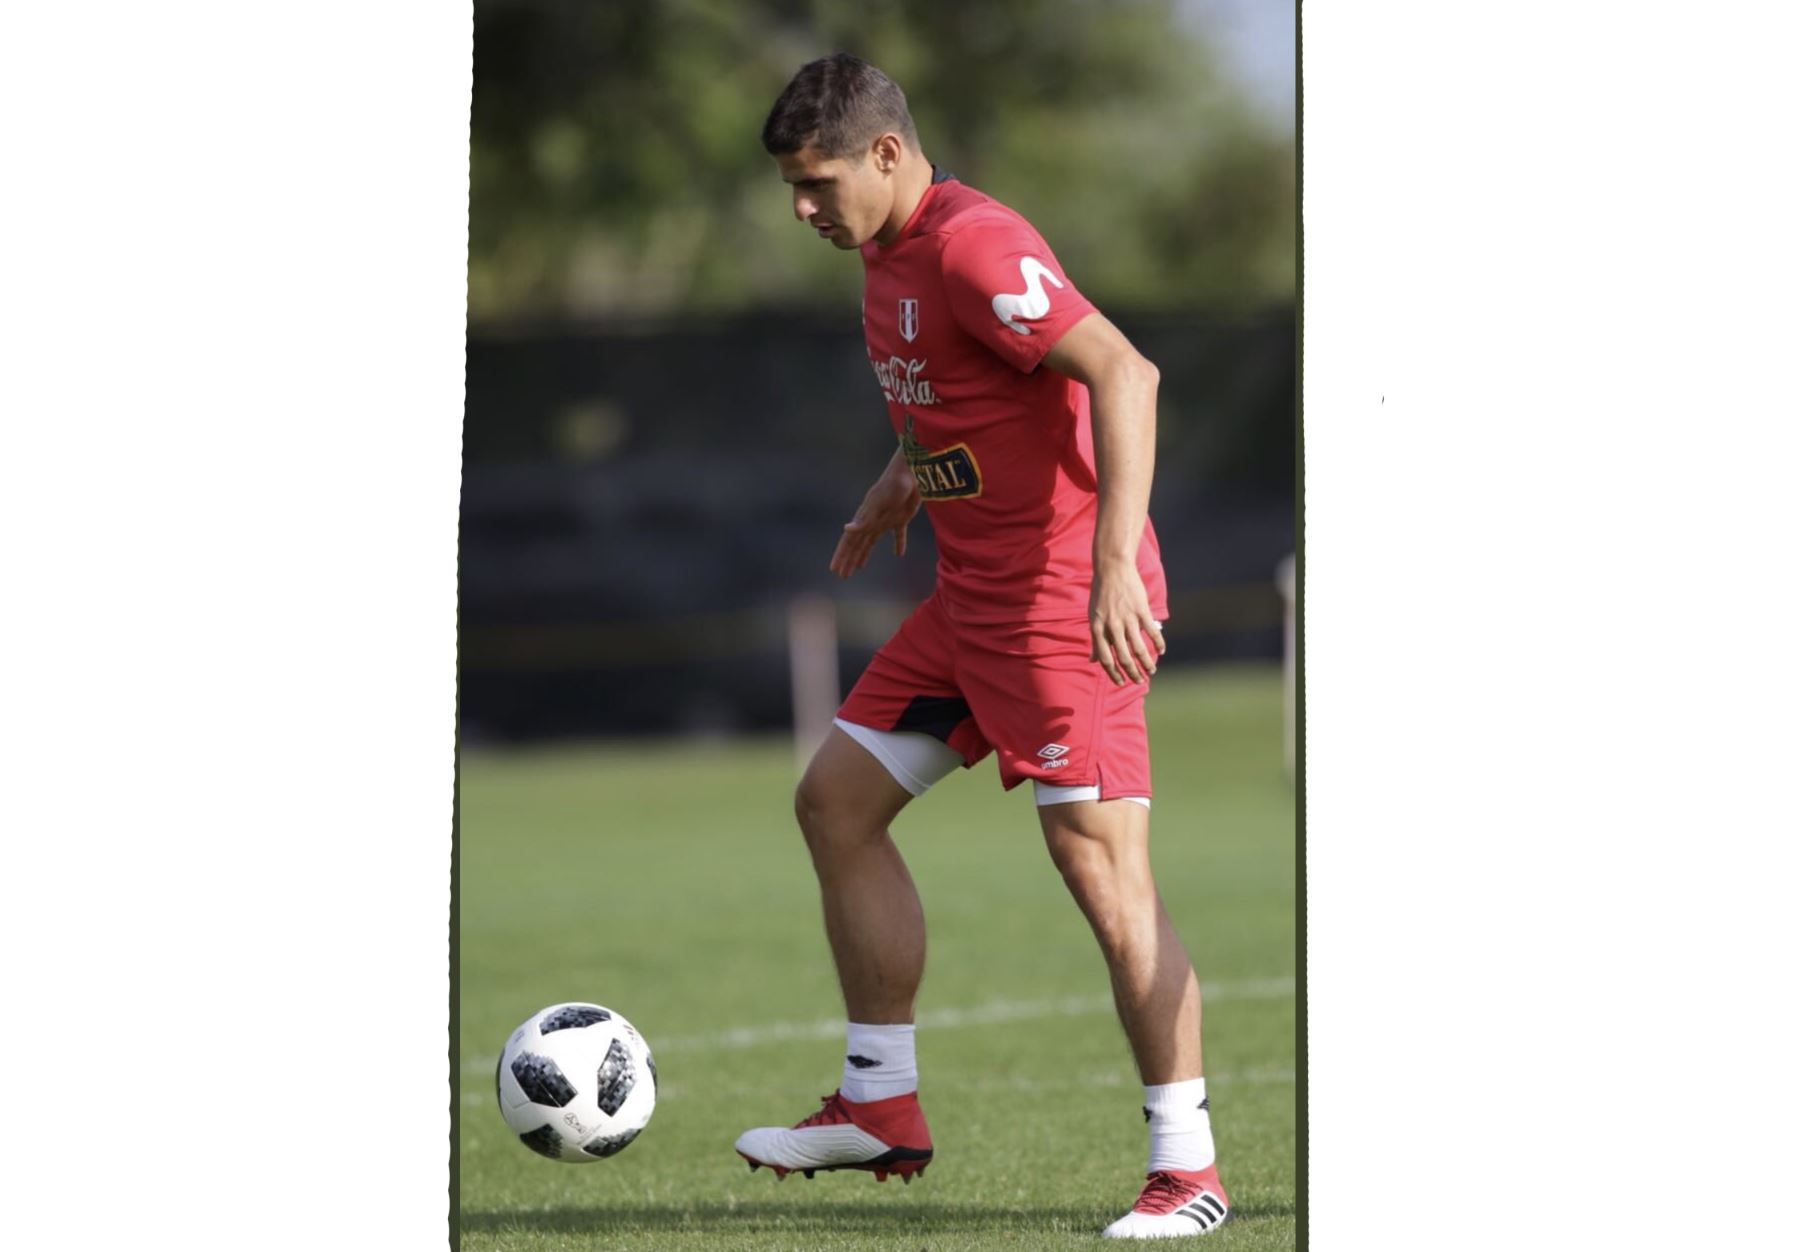 La selección peruana realizó su entrenamiento en Fort Lauderdale, Miami, bajo las órdenes del técnico Ricardo Gareca. Foto: ANDINA/Twiter FPF.